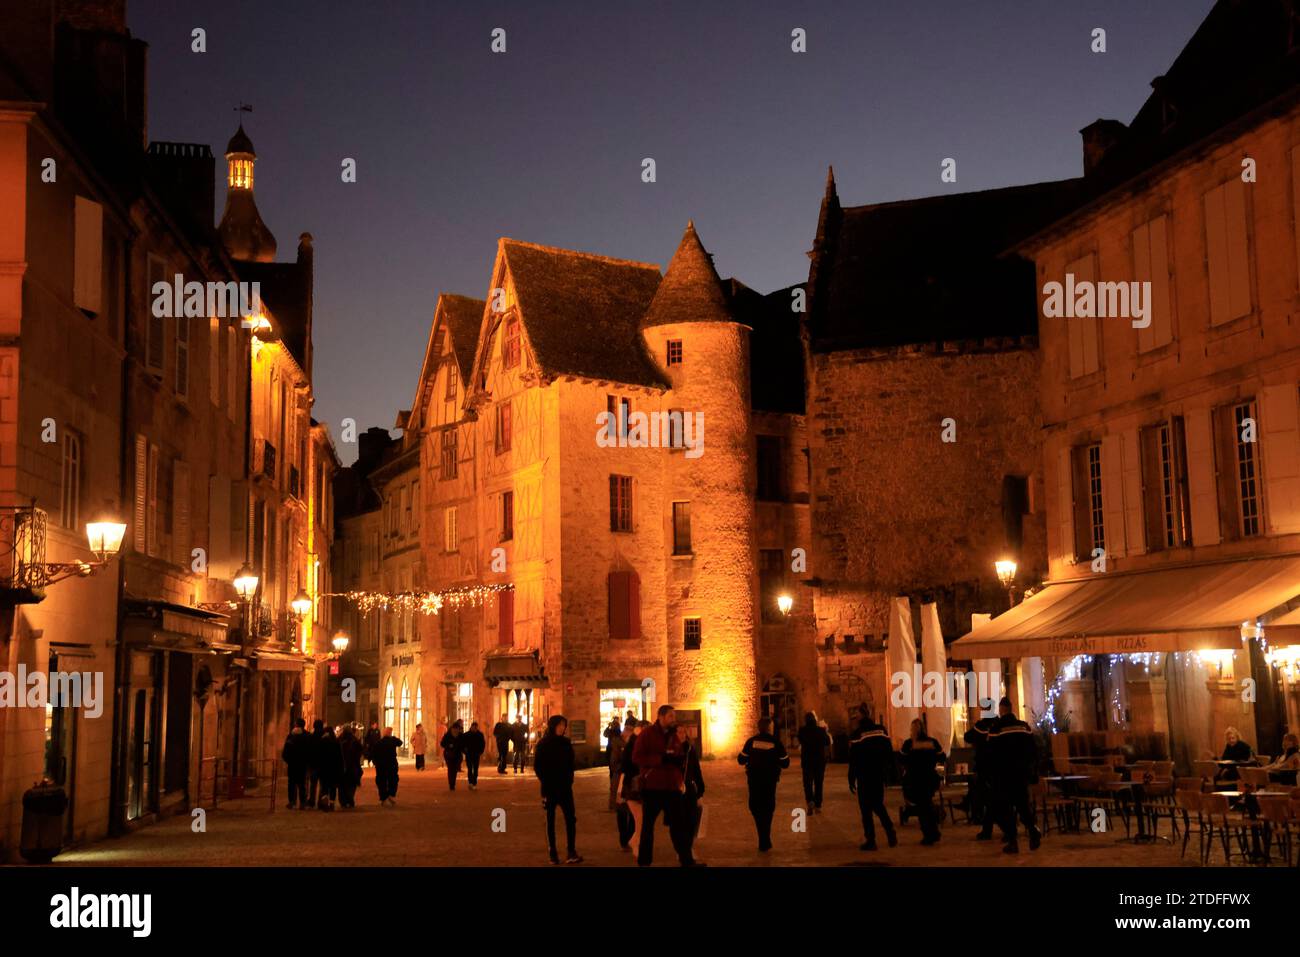 La città medievale di Sarlat nel Périgord Noir prima delle celebrazioni di fine anno di Natale e Capodanno. Architettura, patrimonio, storia e. Foto Stock